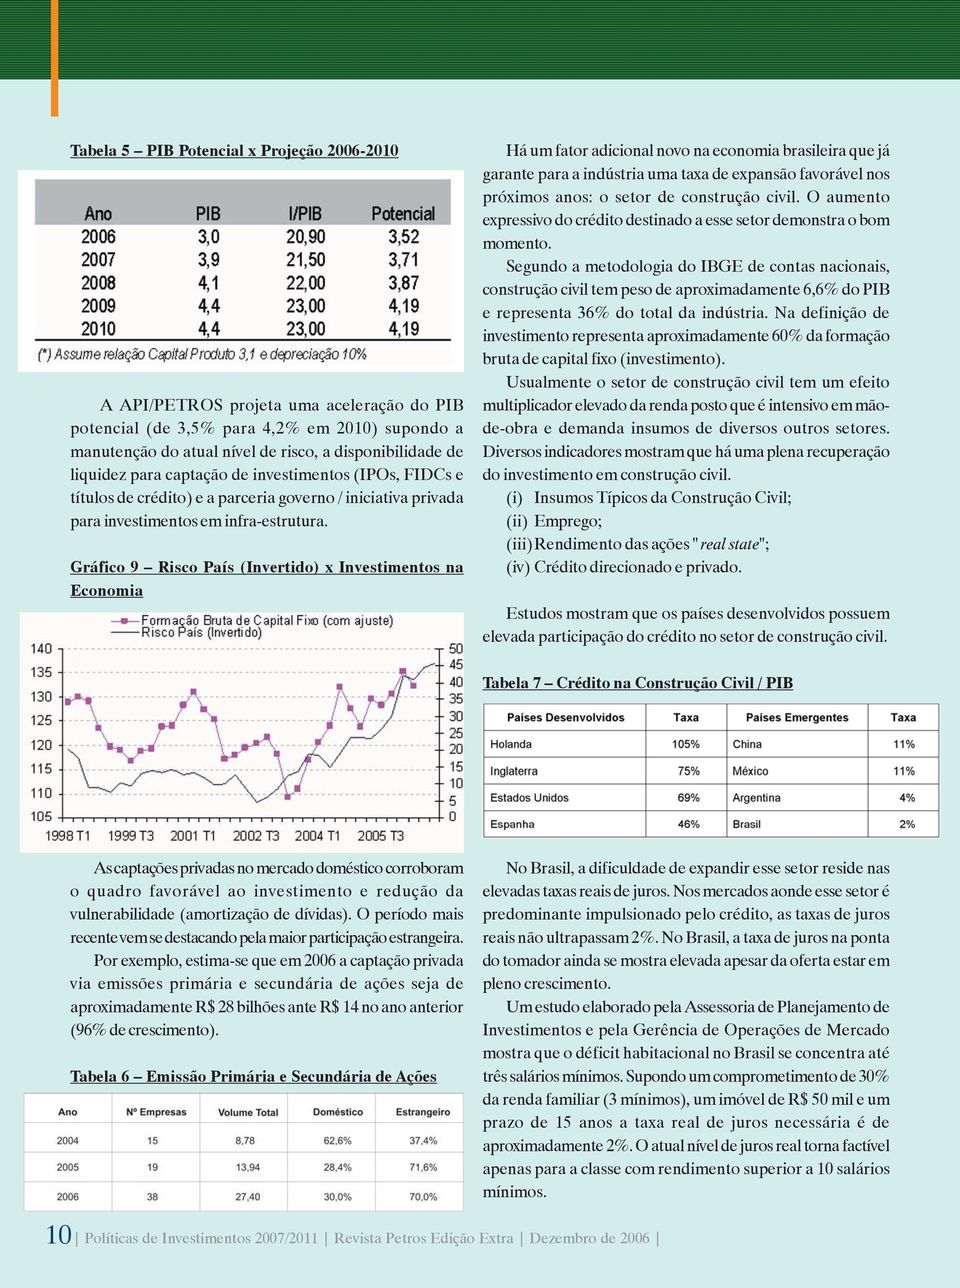 Gráfico 9 Risco País (Invertido) x Investimentos na Economia Há um fator adicional novo na economia brasileira que já garante para a indústria uma taxa de expansão favorável nos próximos anos: o